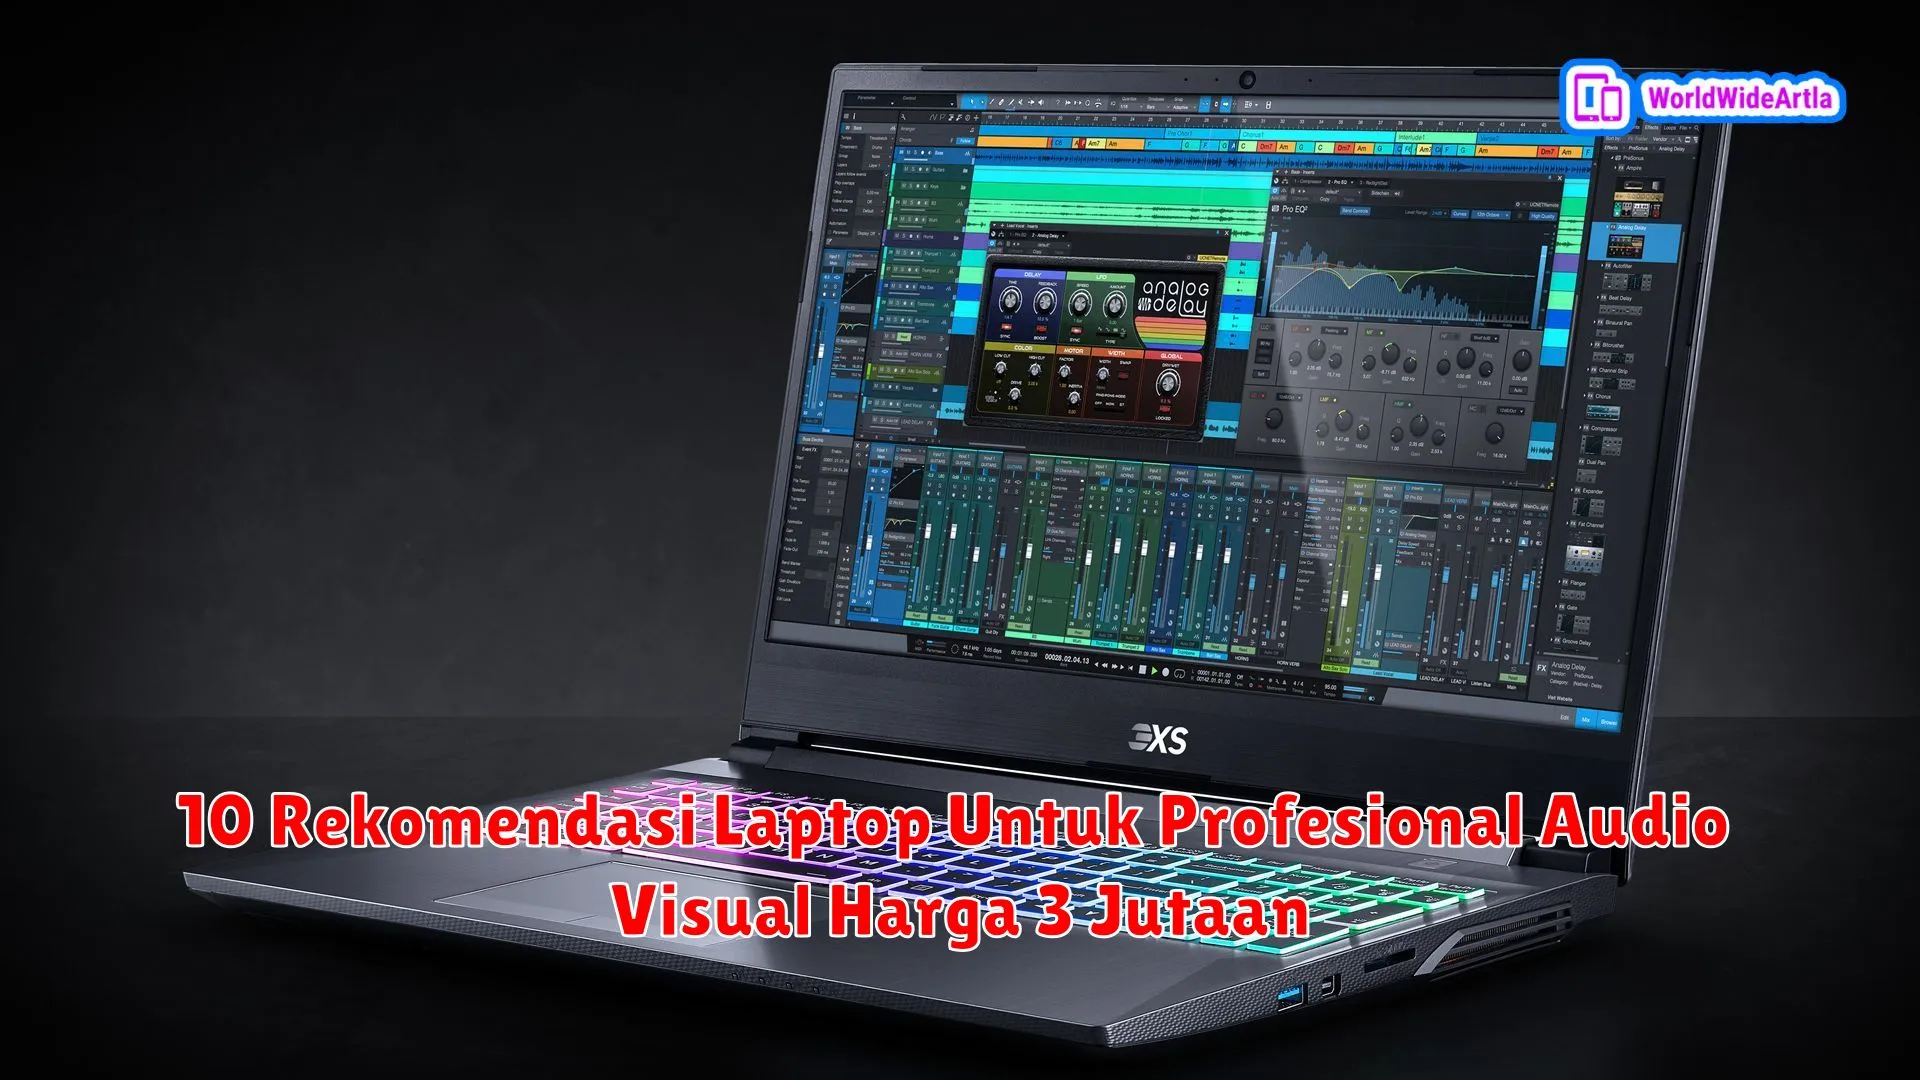 10 Rekomendasi Laptop Untuk Profesional Audio Visual Harga 3 Jutaan